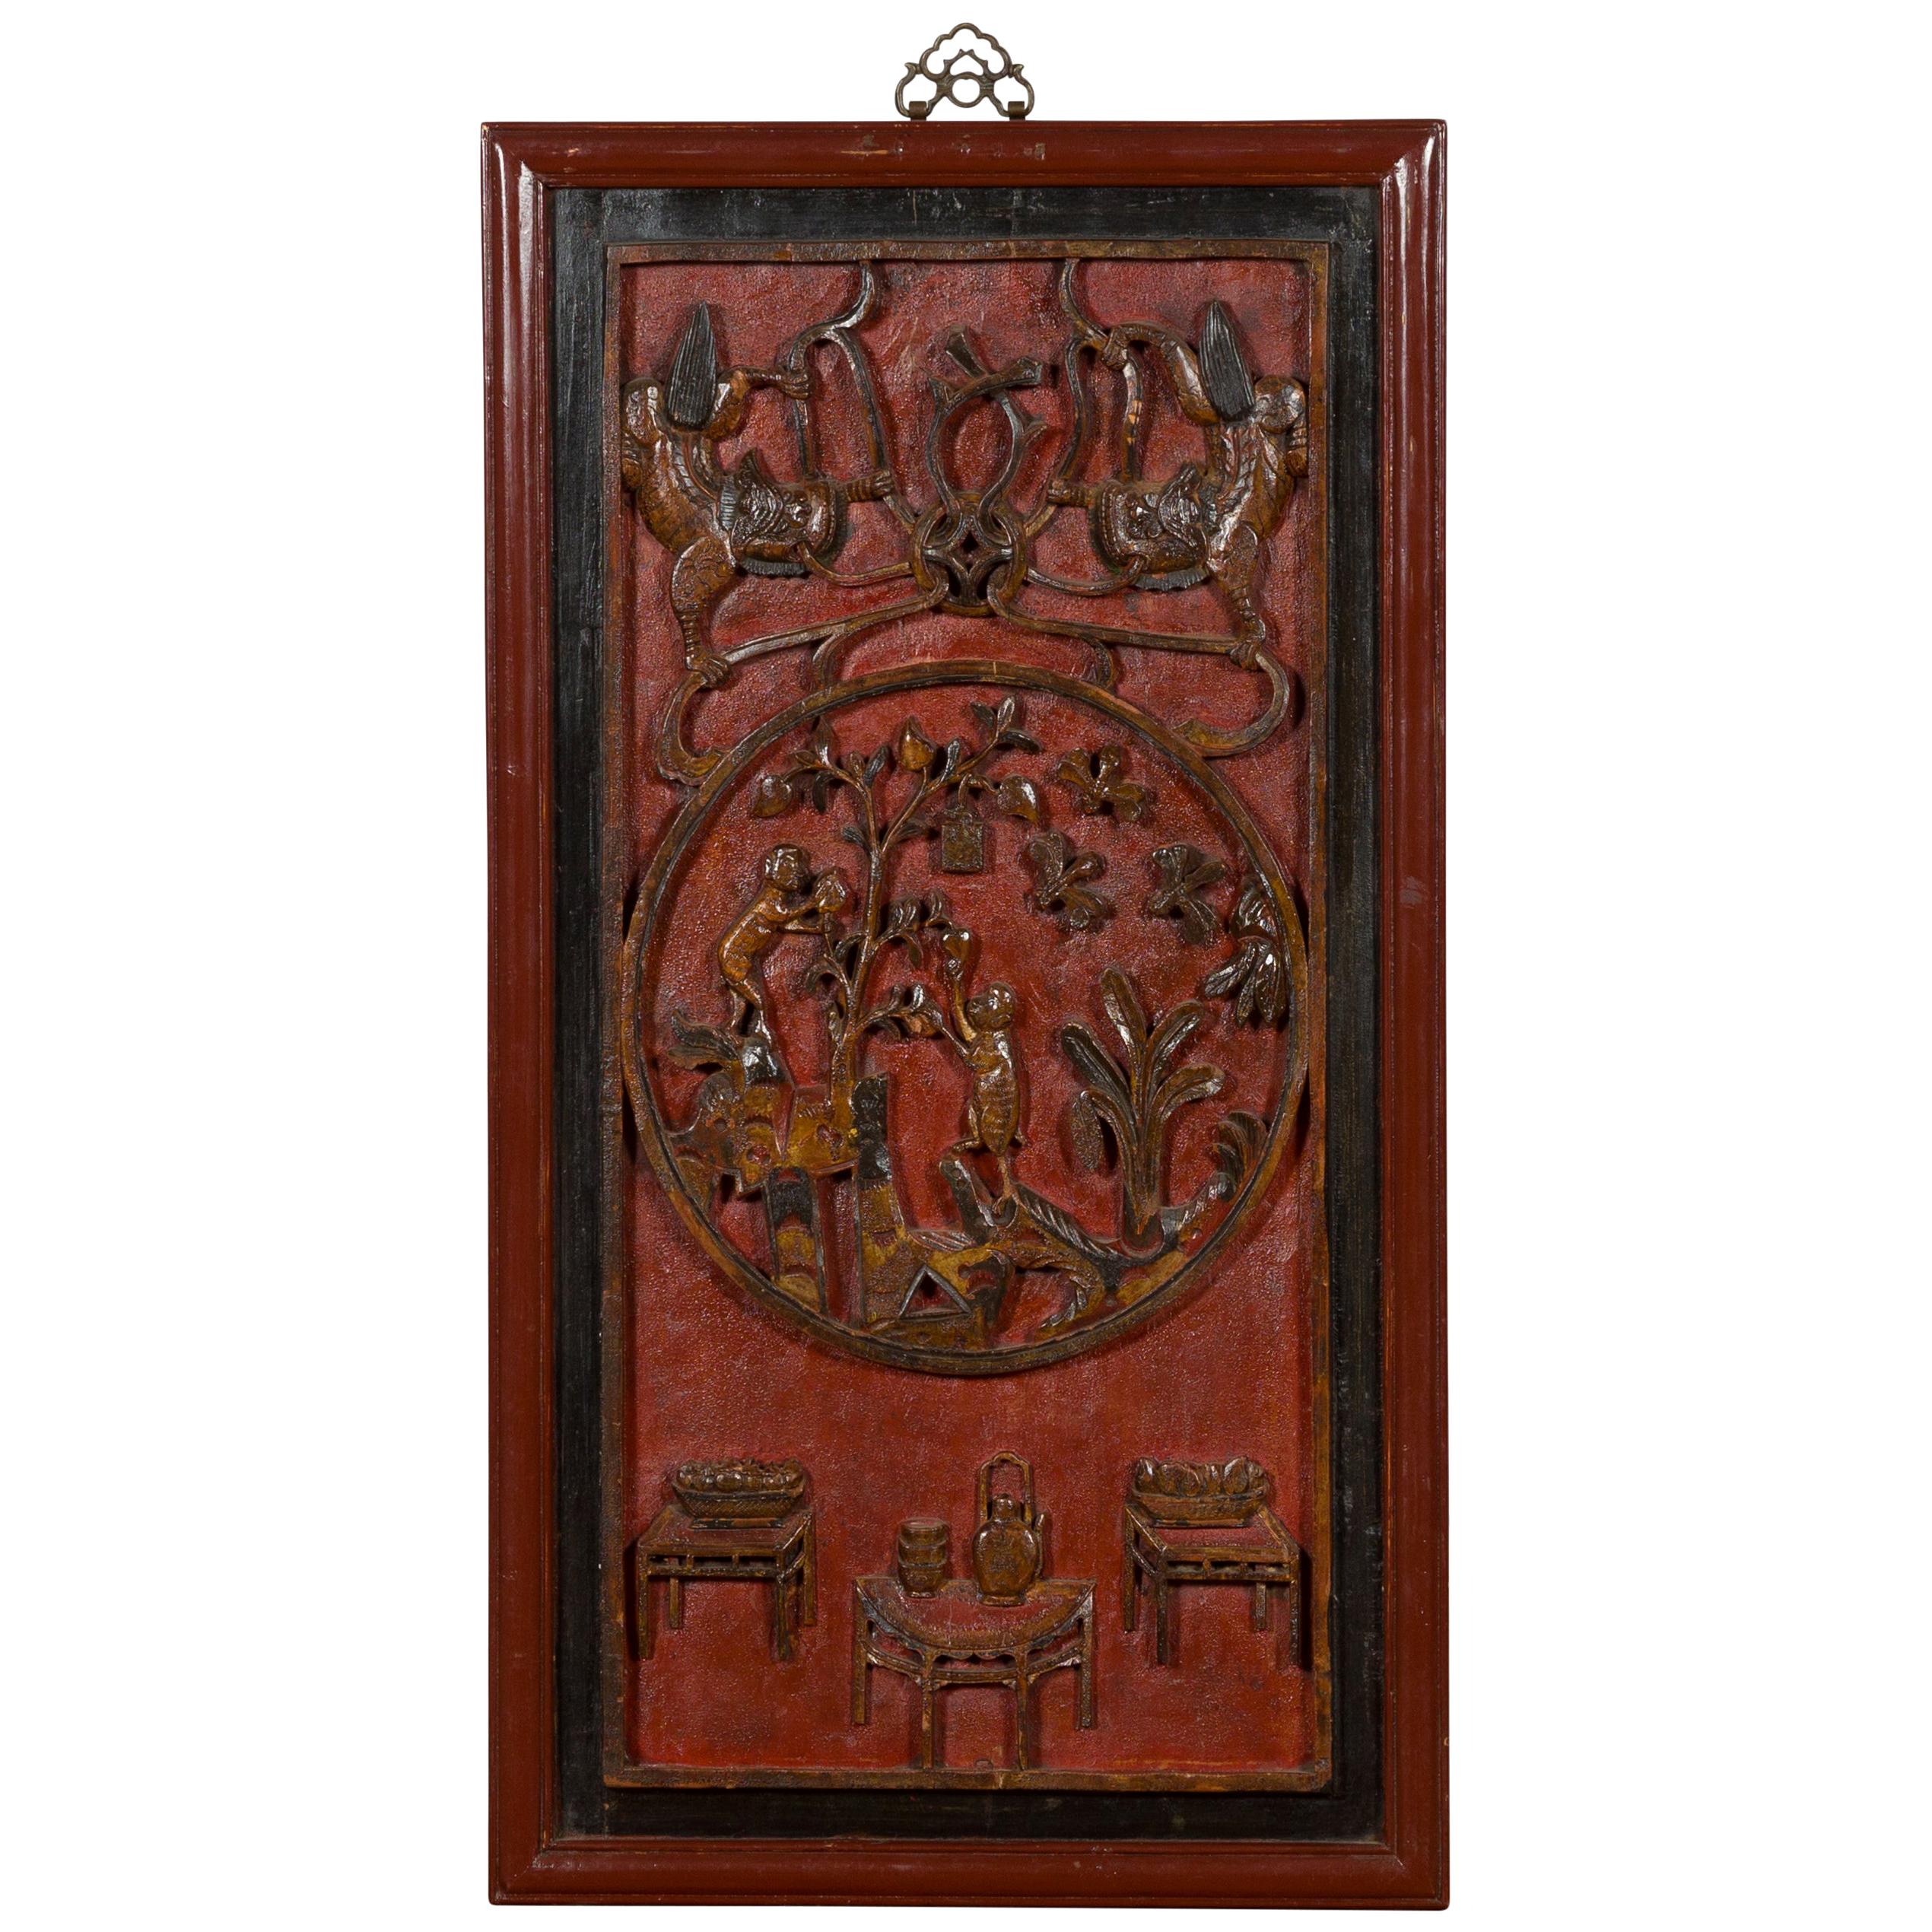 Chinesisches geschnitztes Paneel aus der chinesischen Qing-Dynastie des 19. Jahrhunderts mit rotem, schwarzem und braunem Lack